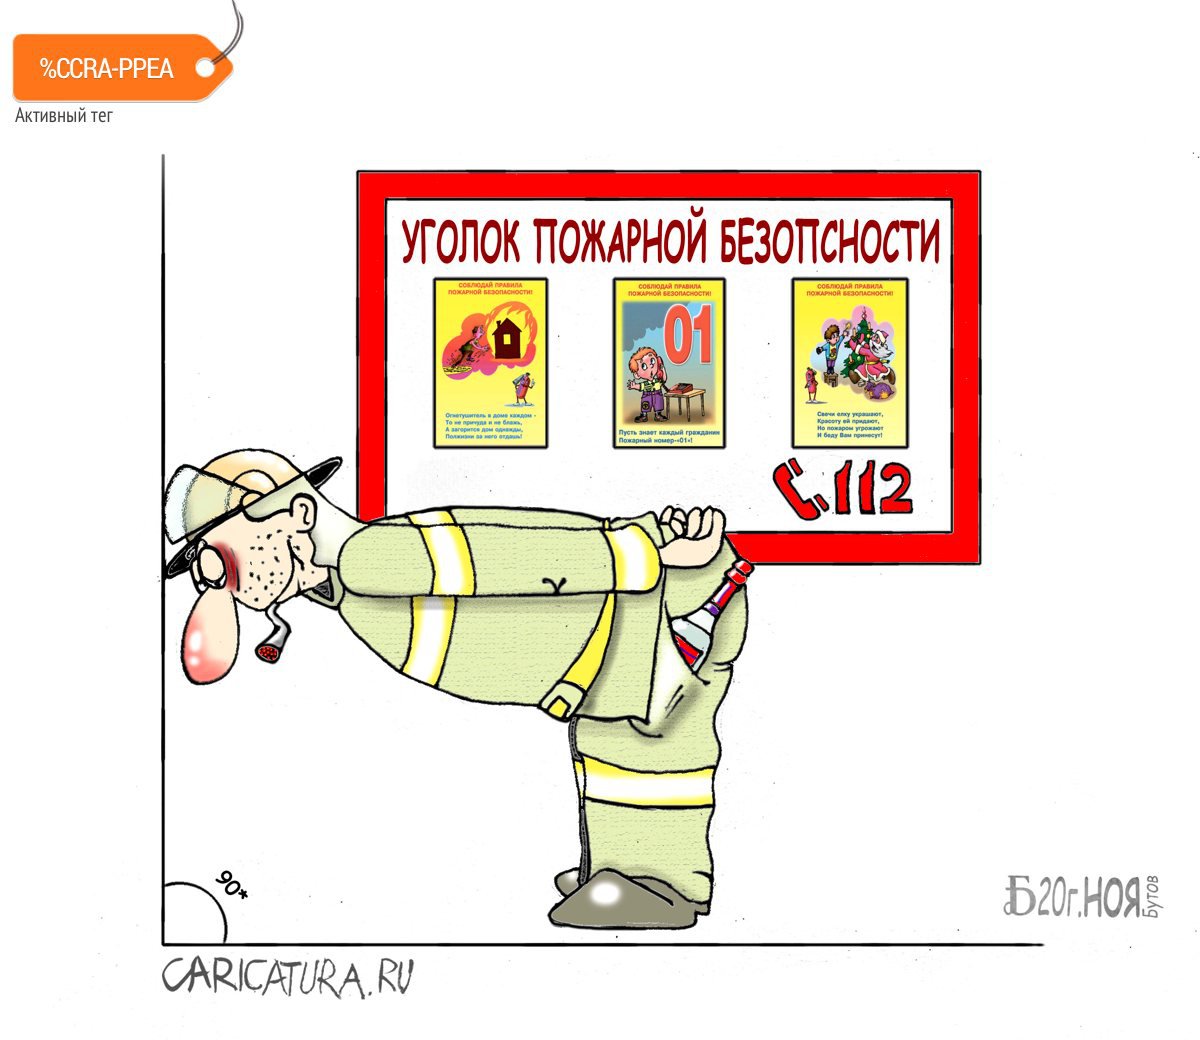 Карикатура "Про под прямым углом", Борис Демин